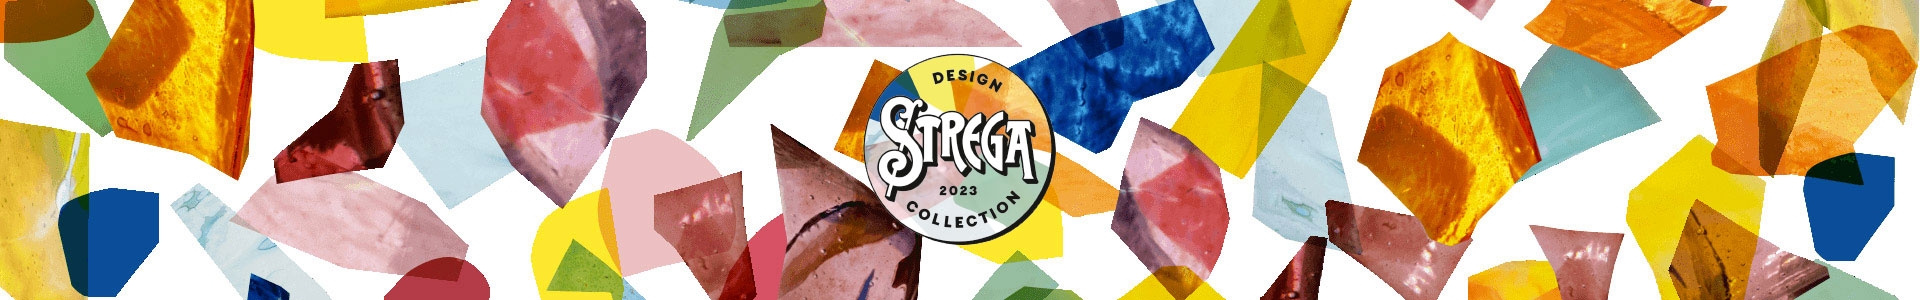 Strega Design Collection